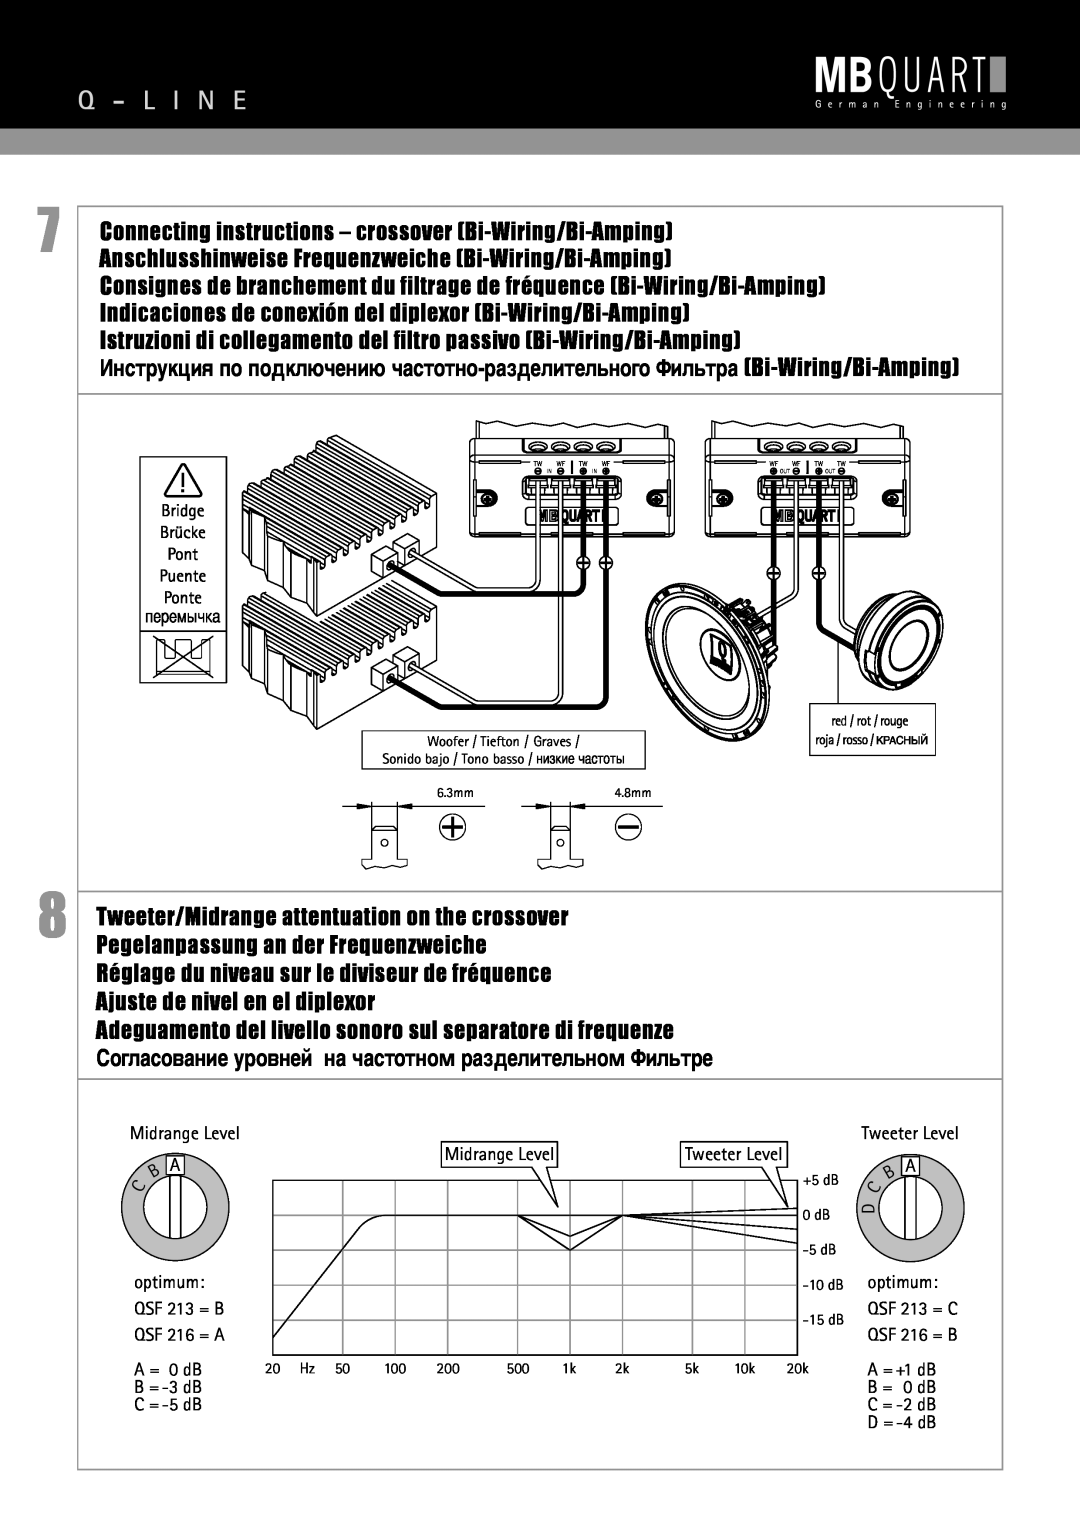 MB QUART QSF 216, QSF 213 Q - L I N E, Istruzioni di collegamento del filtro passivo Bi-Wiring/Bi-Amping 